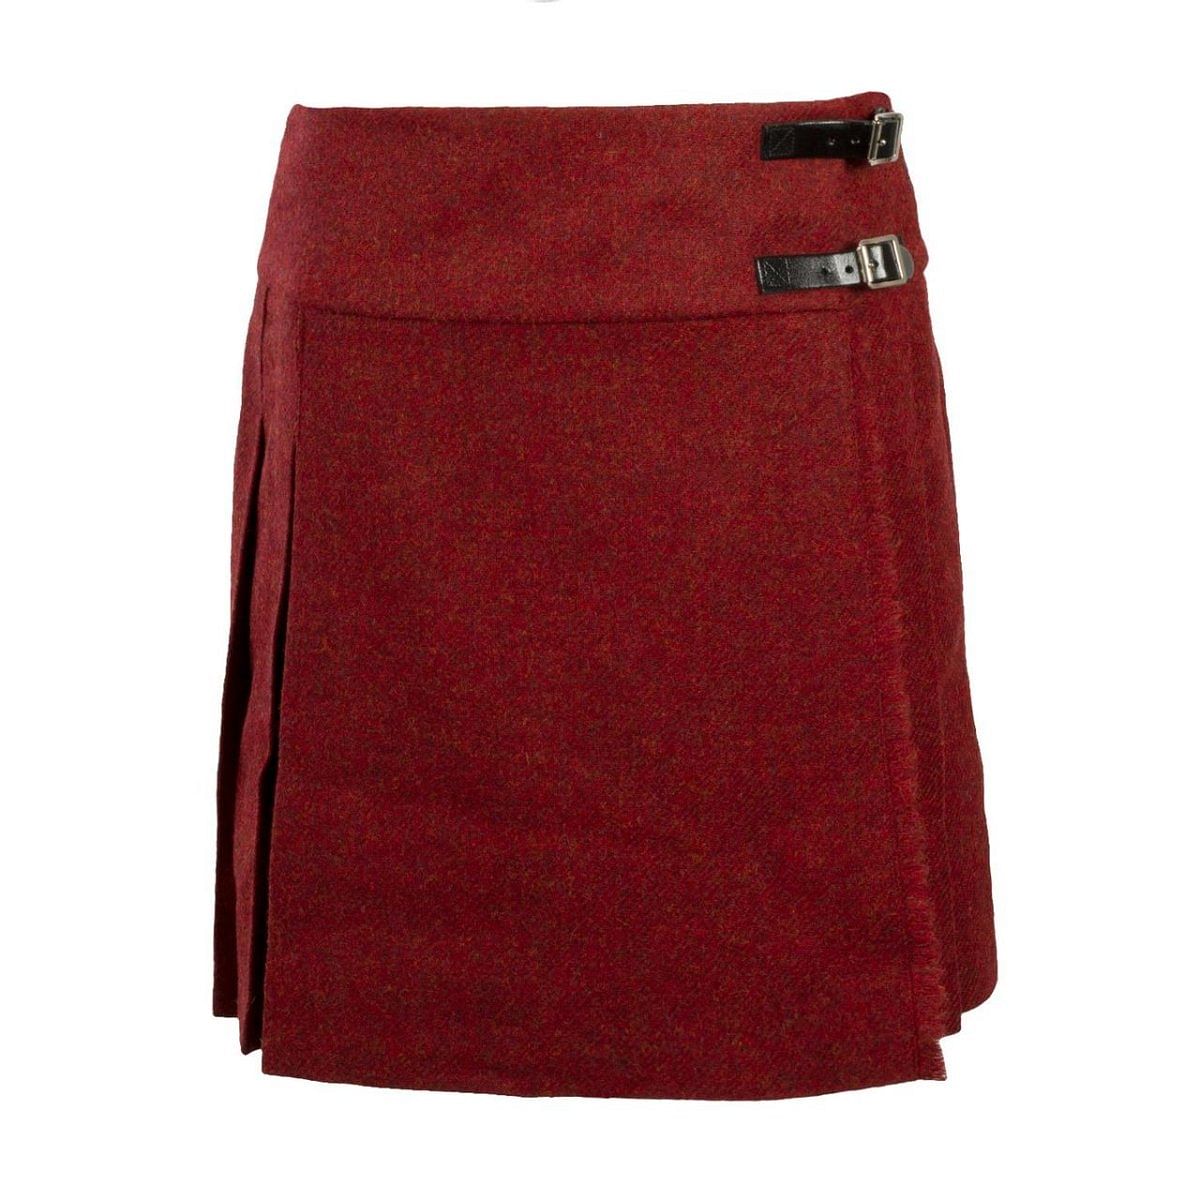 Wool Ladies Knee Length Pleated Kilt Skirt - #Kilts Boutique#